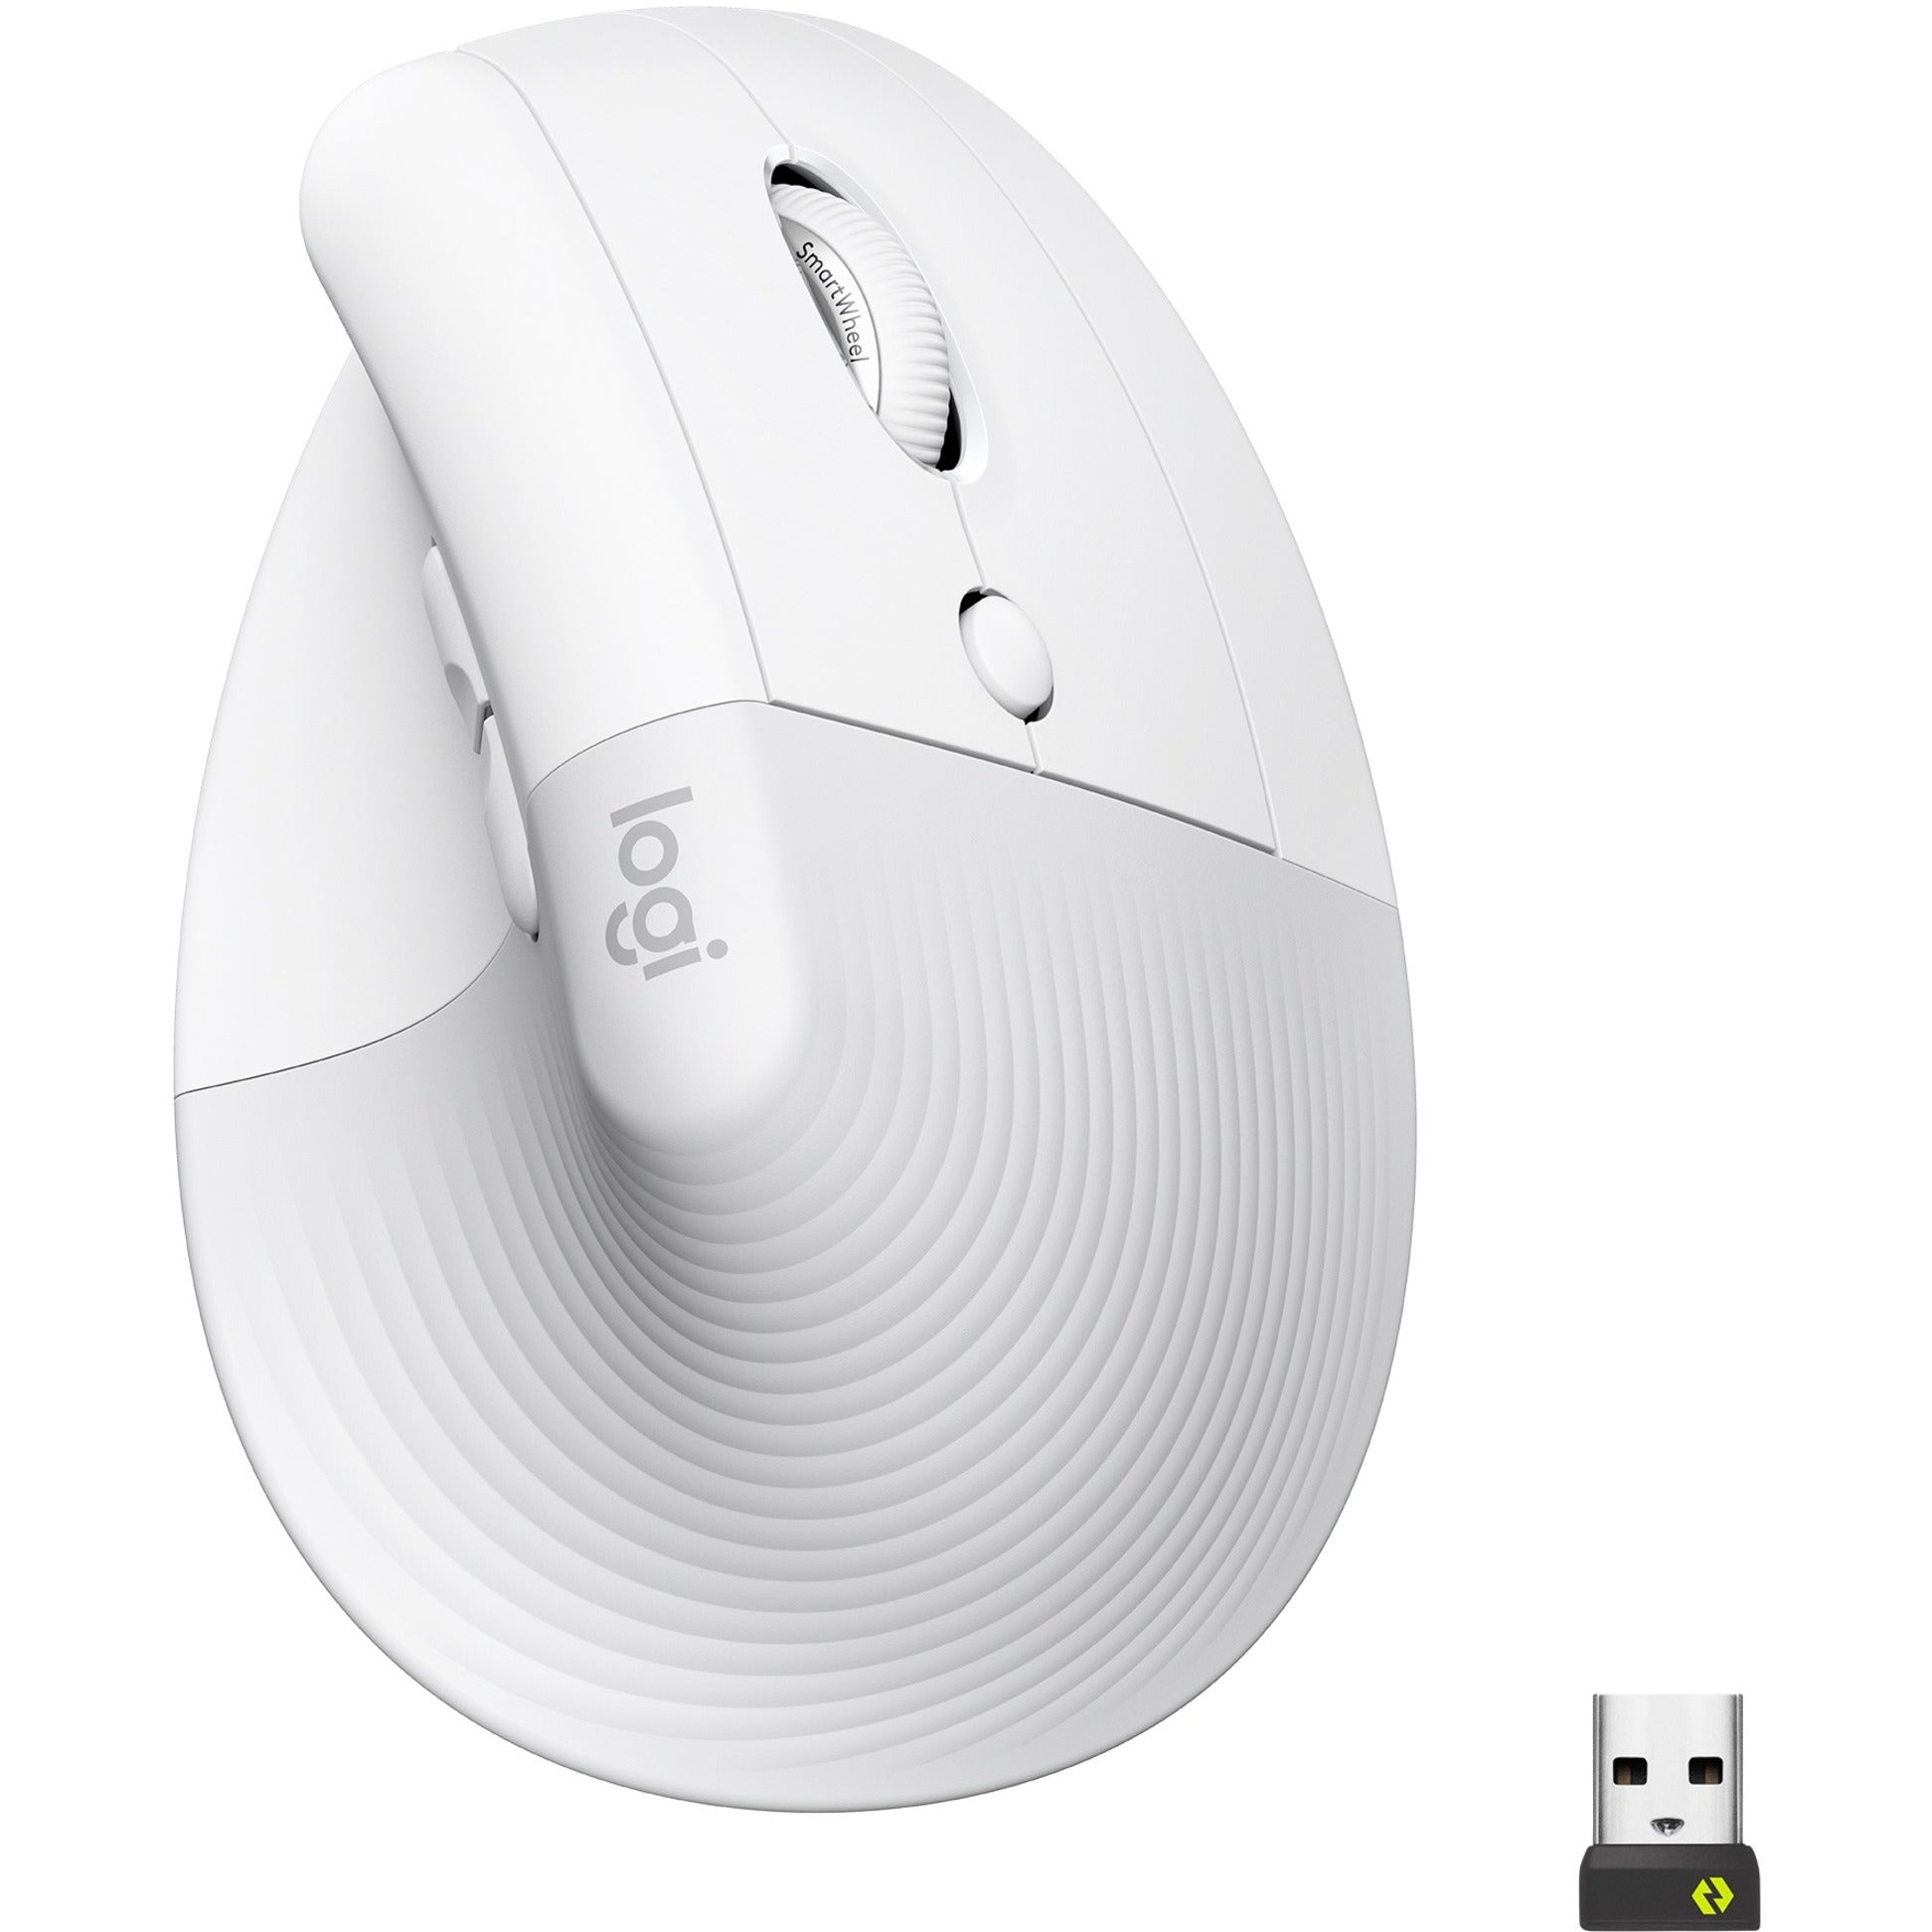 Logitech 910-006469 Lift Vertical Ergonomic Mouse (Off-white), Left-handed, Small/Medium, 4000 dpi, Wireless